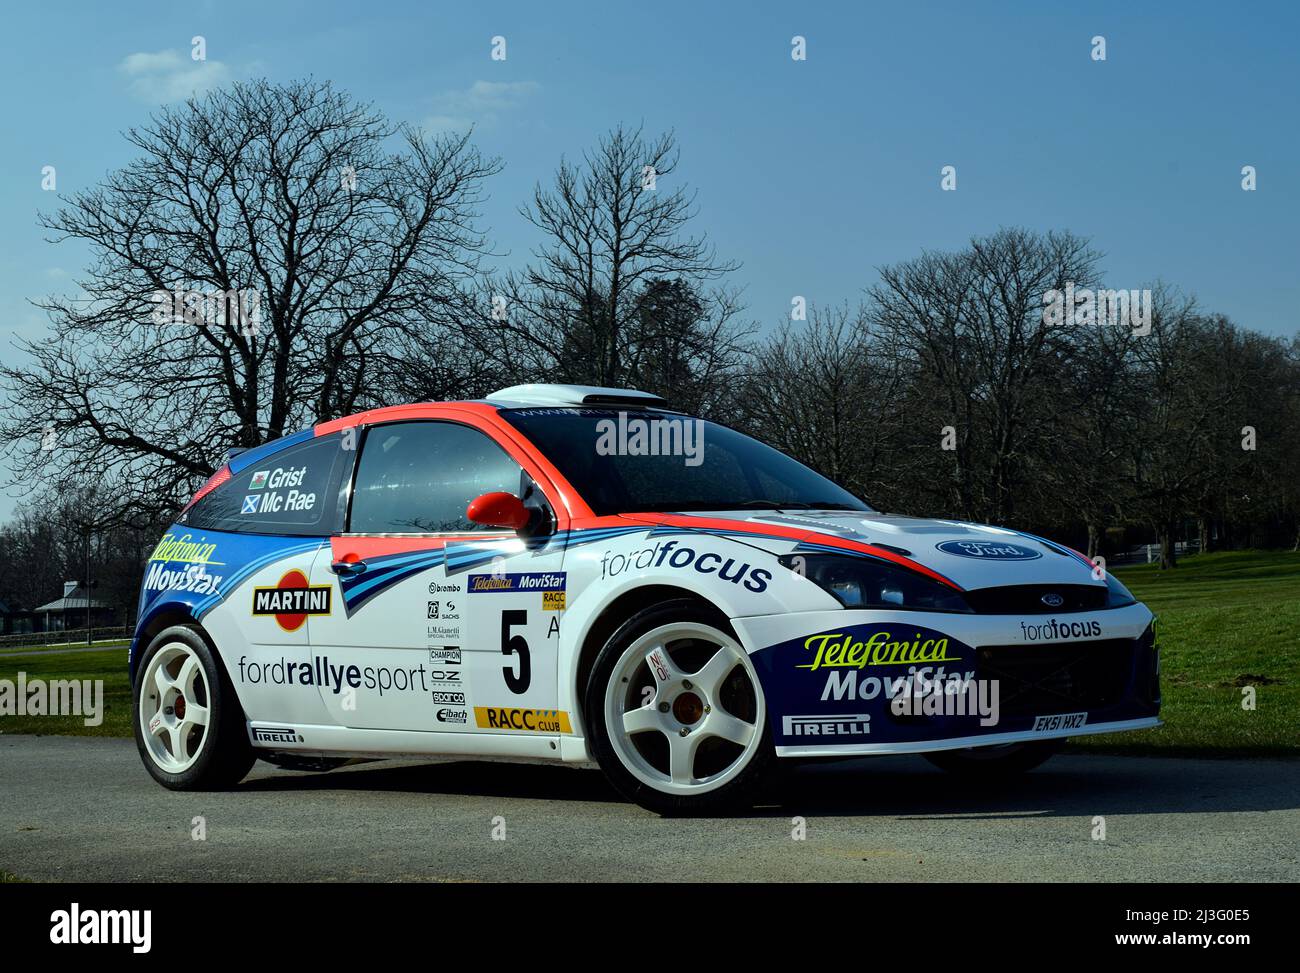 2002 Ford Focus WRC Foto de stock